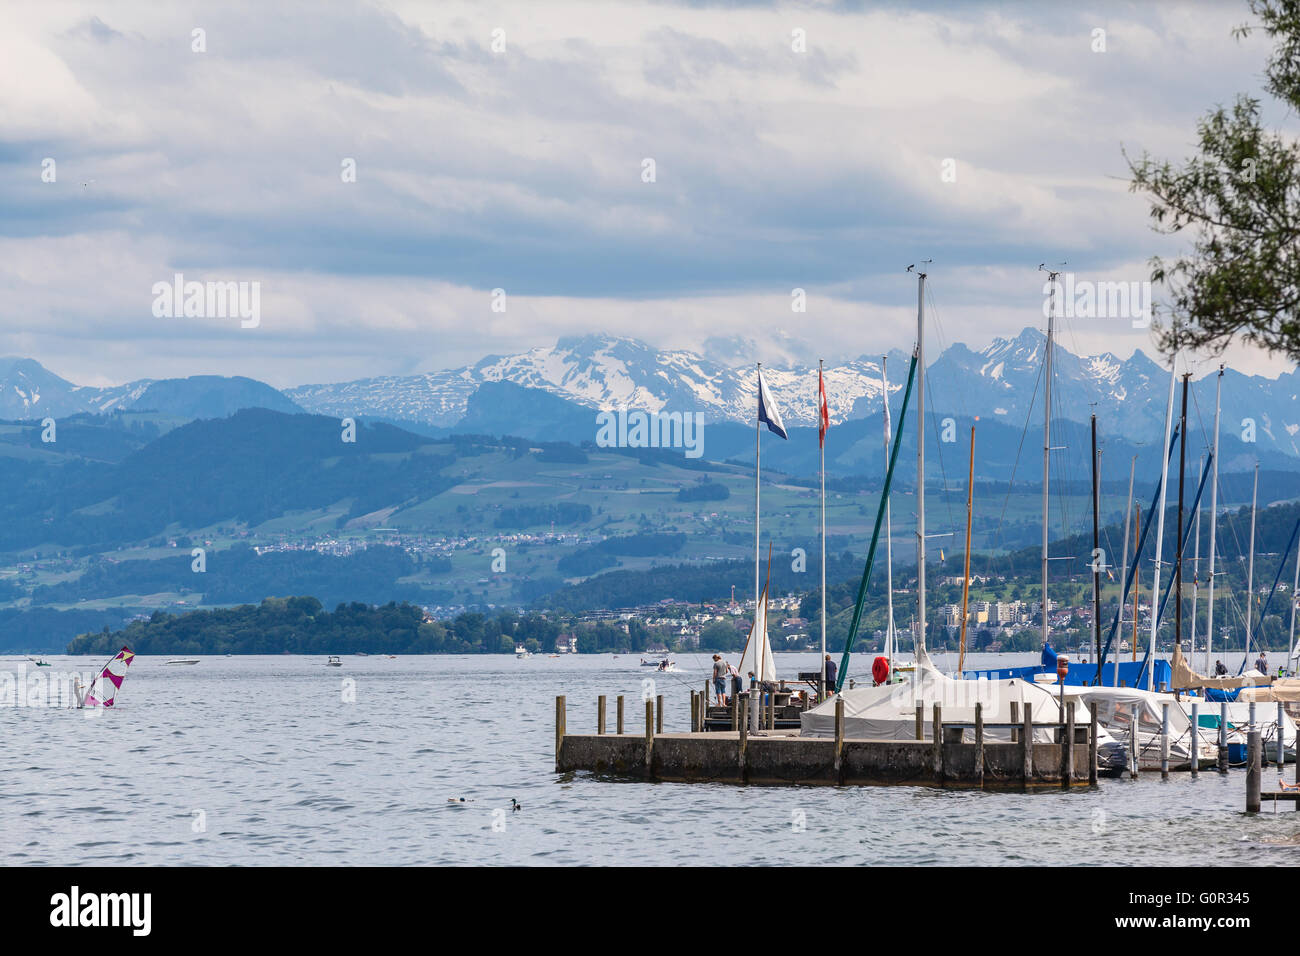 Vue panoramique sur le lac de Zurich avec les alpes suisses en arrière-plan, Suisse Banque D'Images